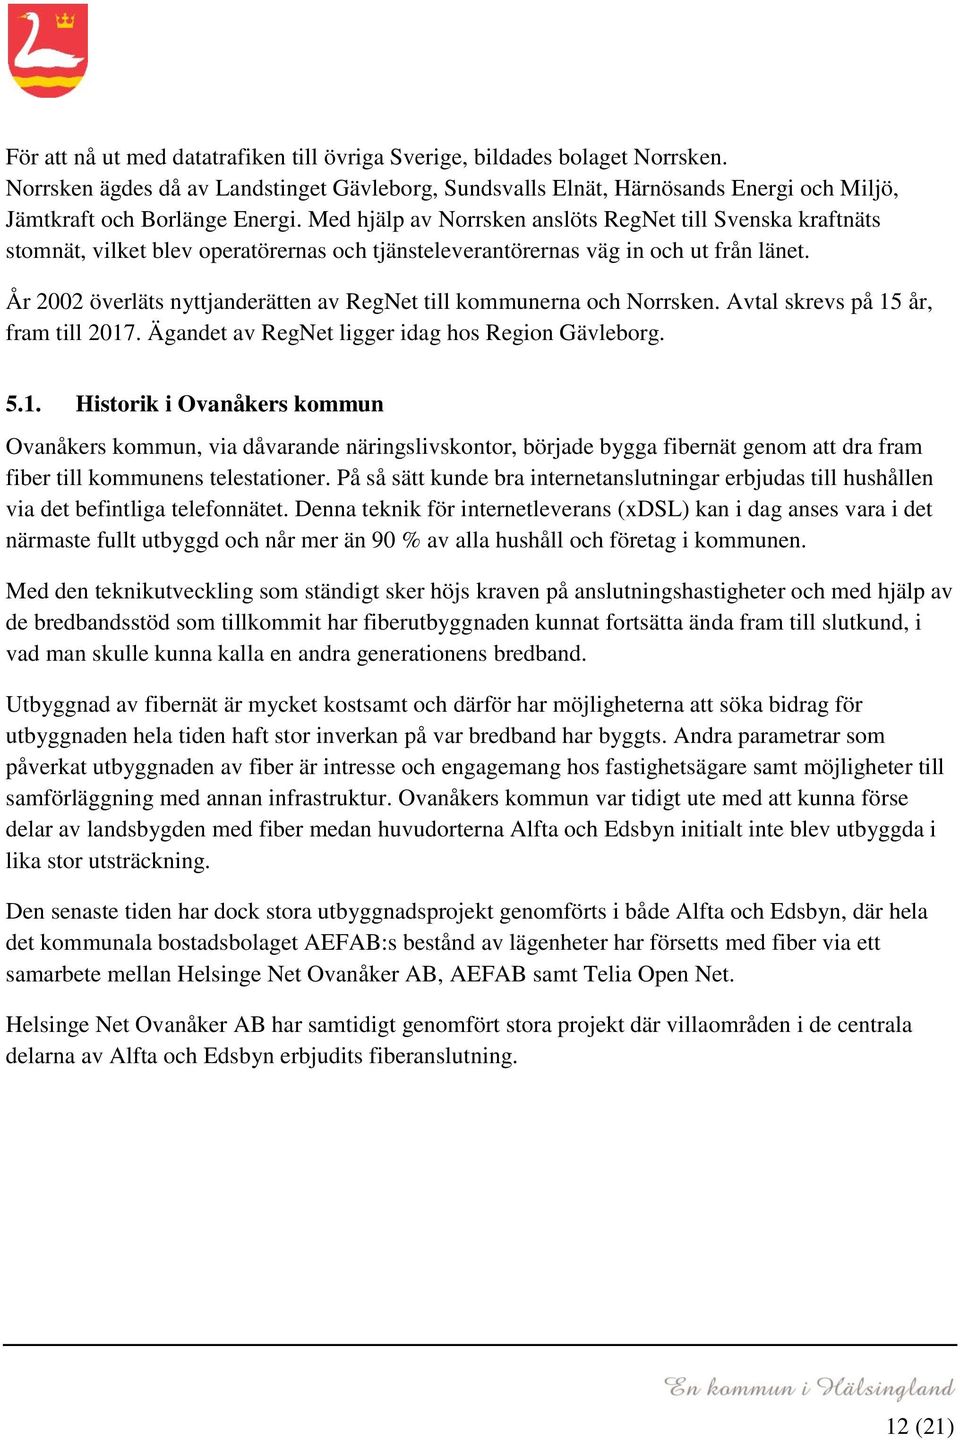 År 2002 överläts nyttjanderätten av RegNet till kommunerna och Norrsken. Avtal skrevs på 15